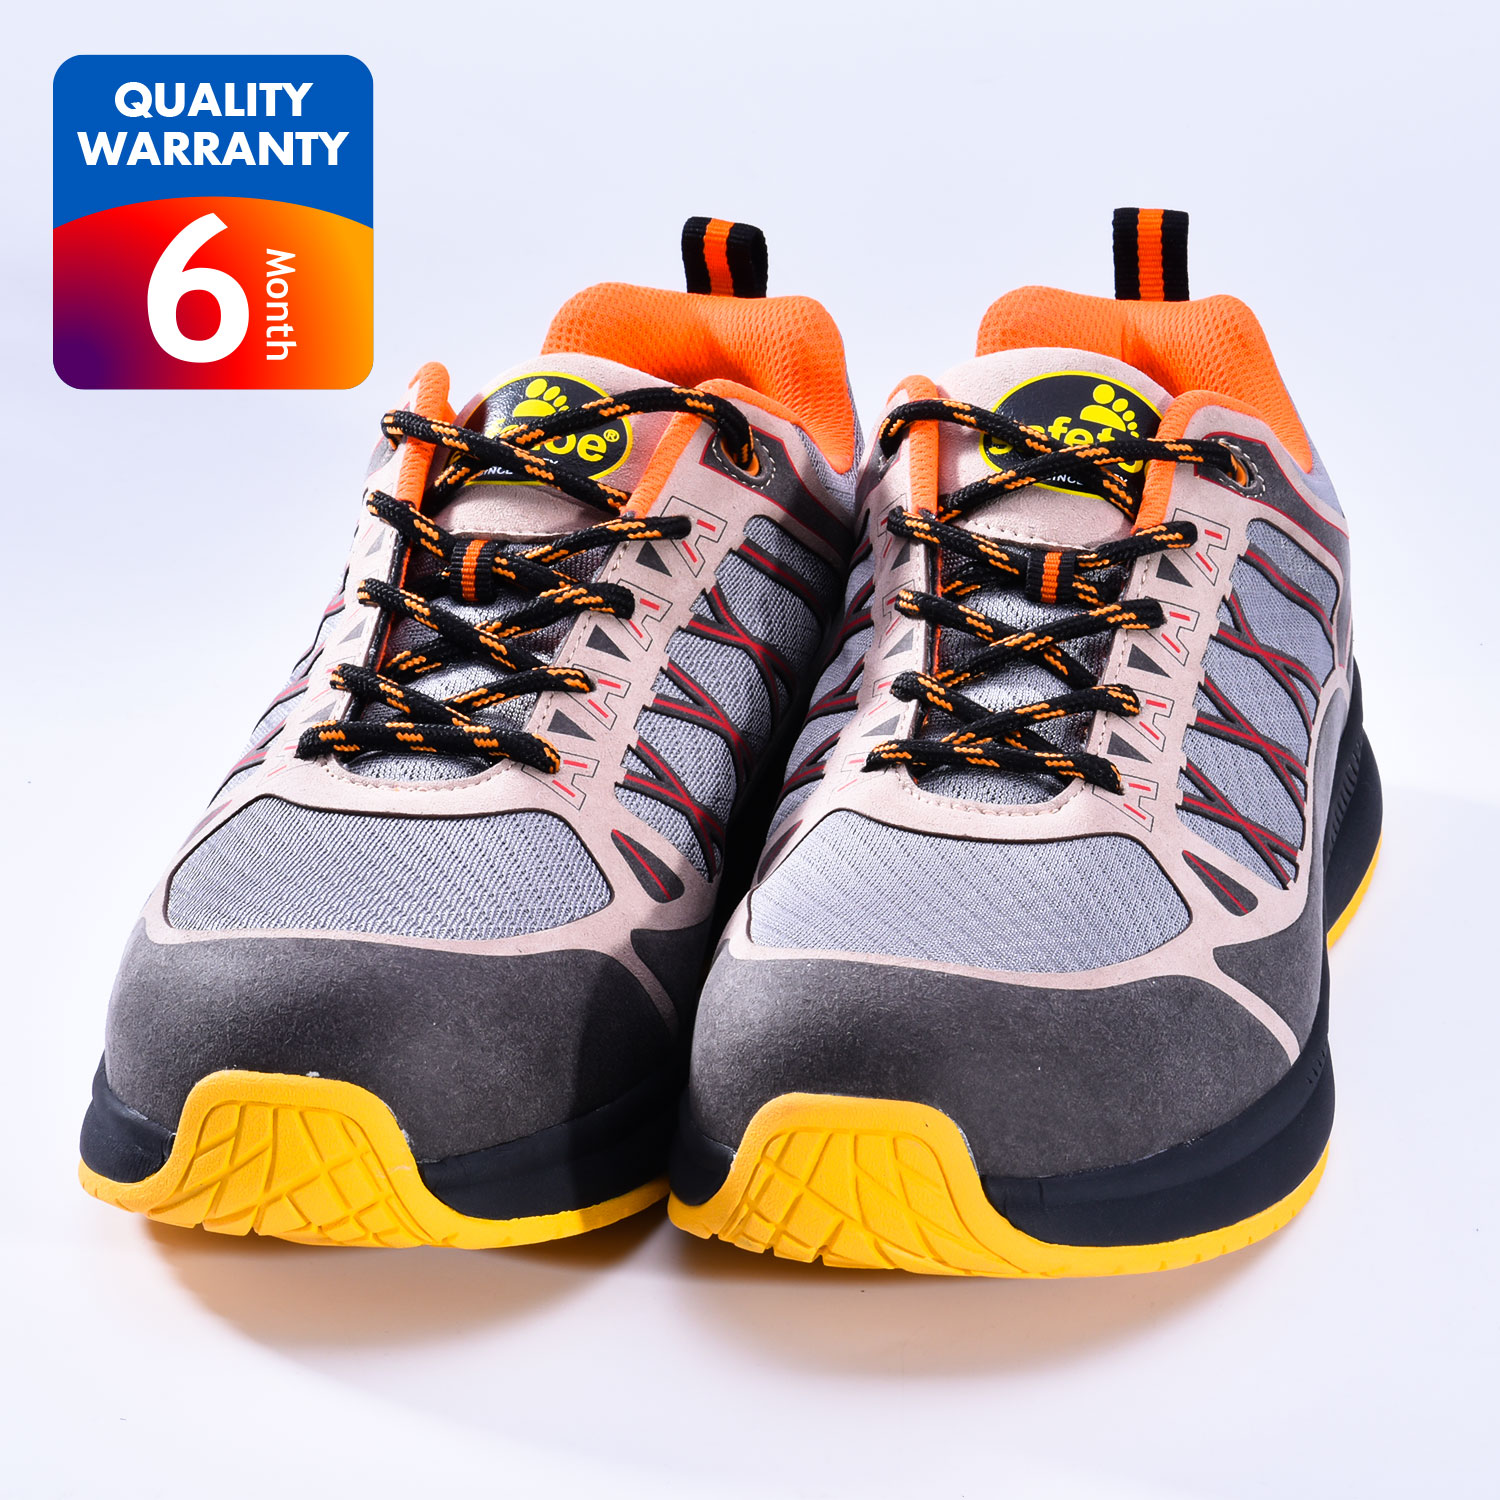 Chaussures de sécurité pour sports industriels L-7392 Jaune